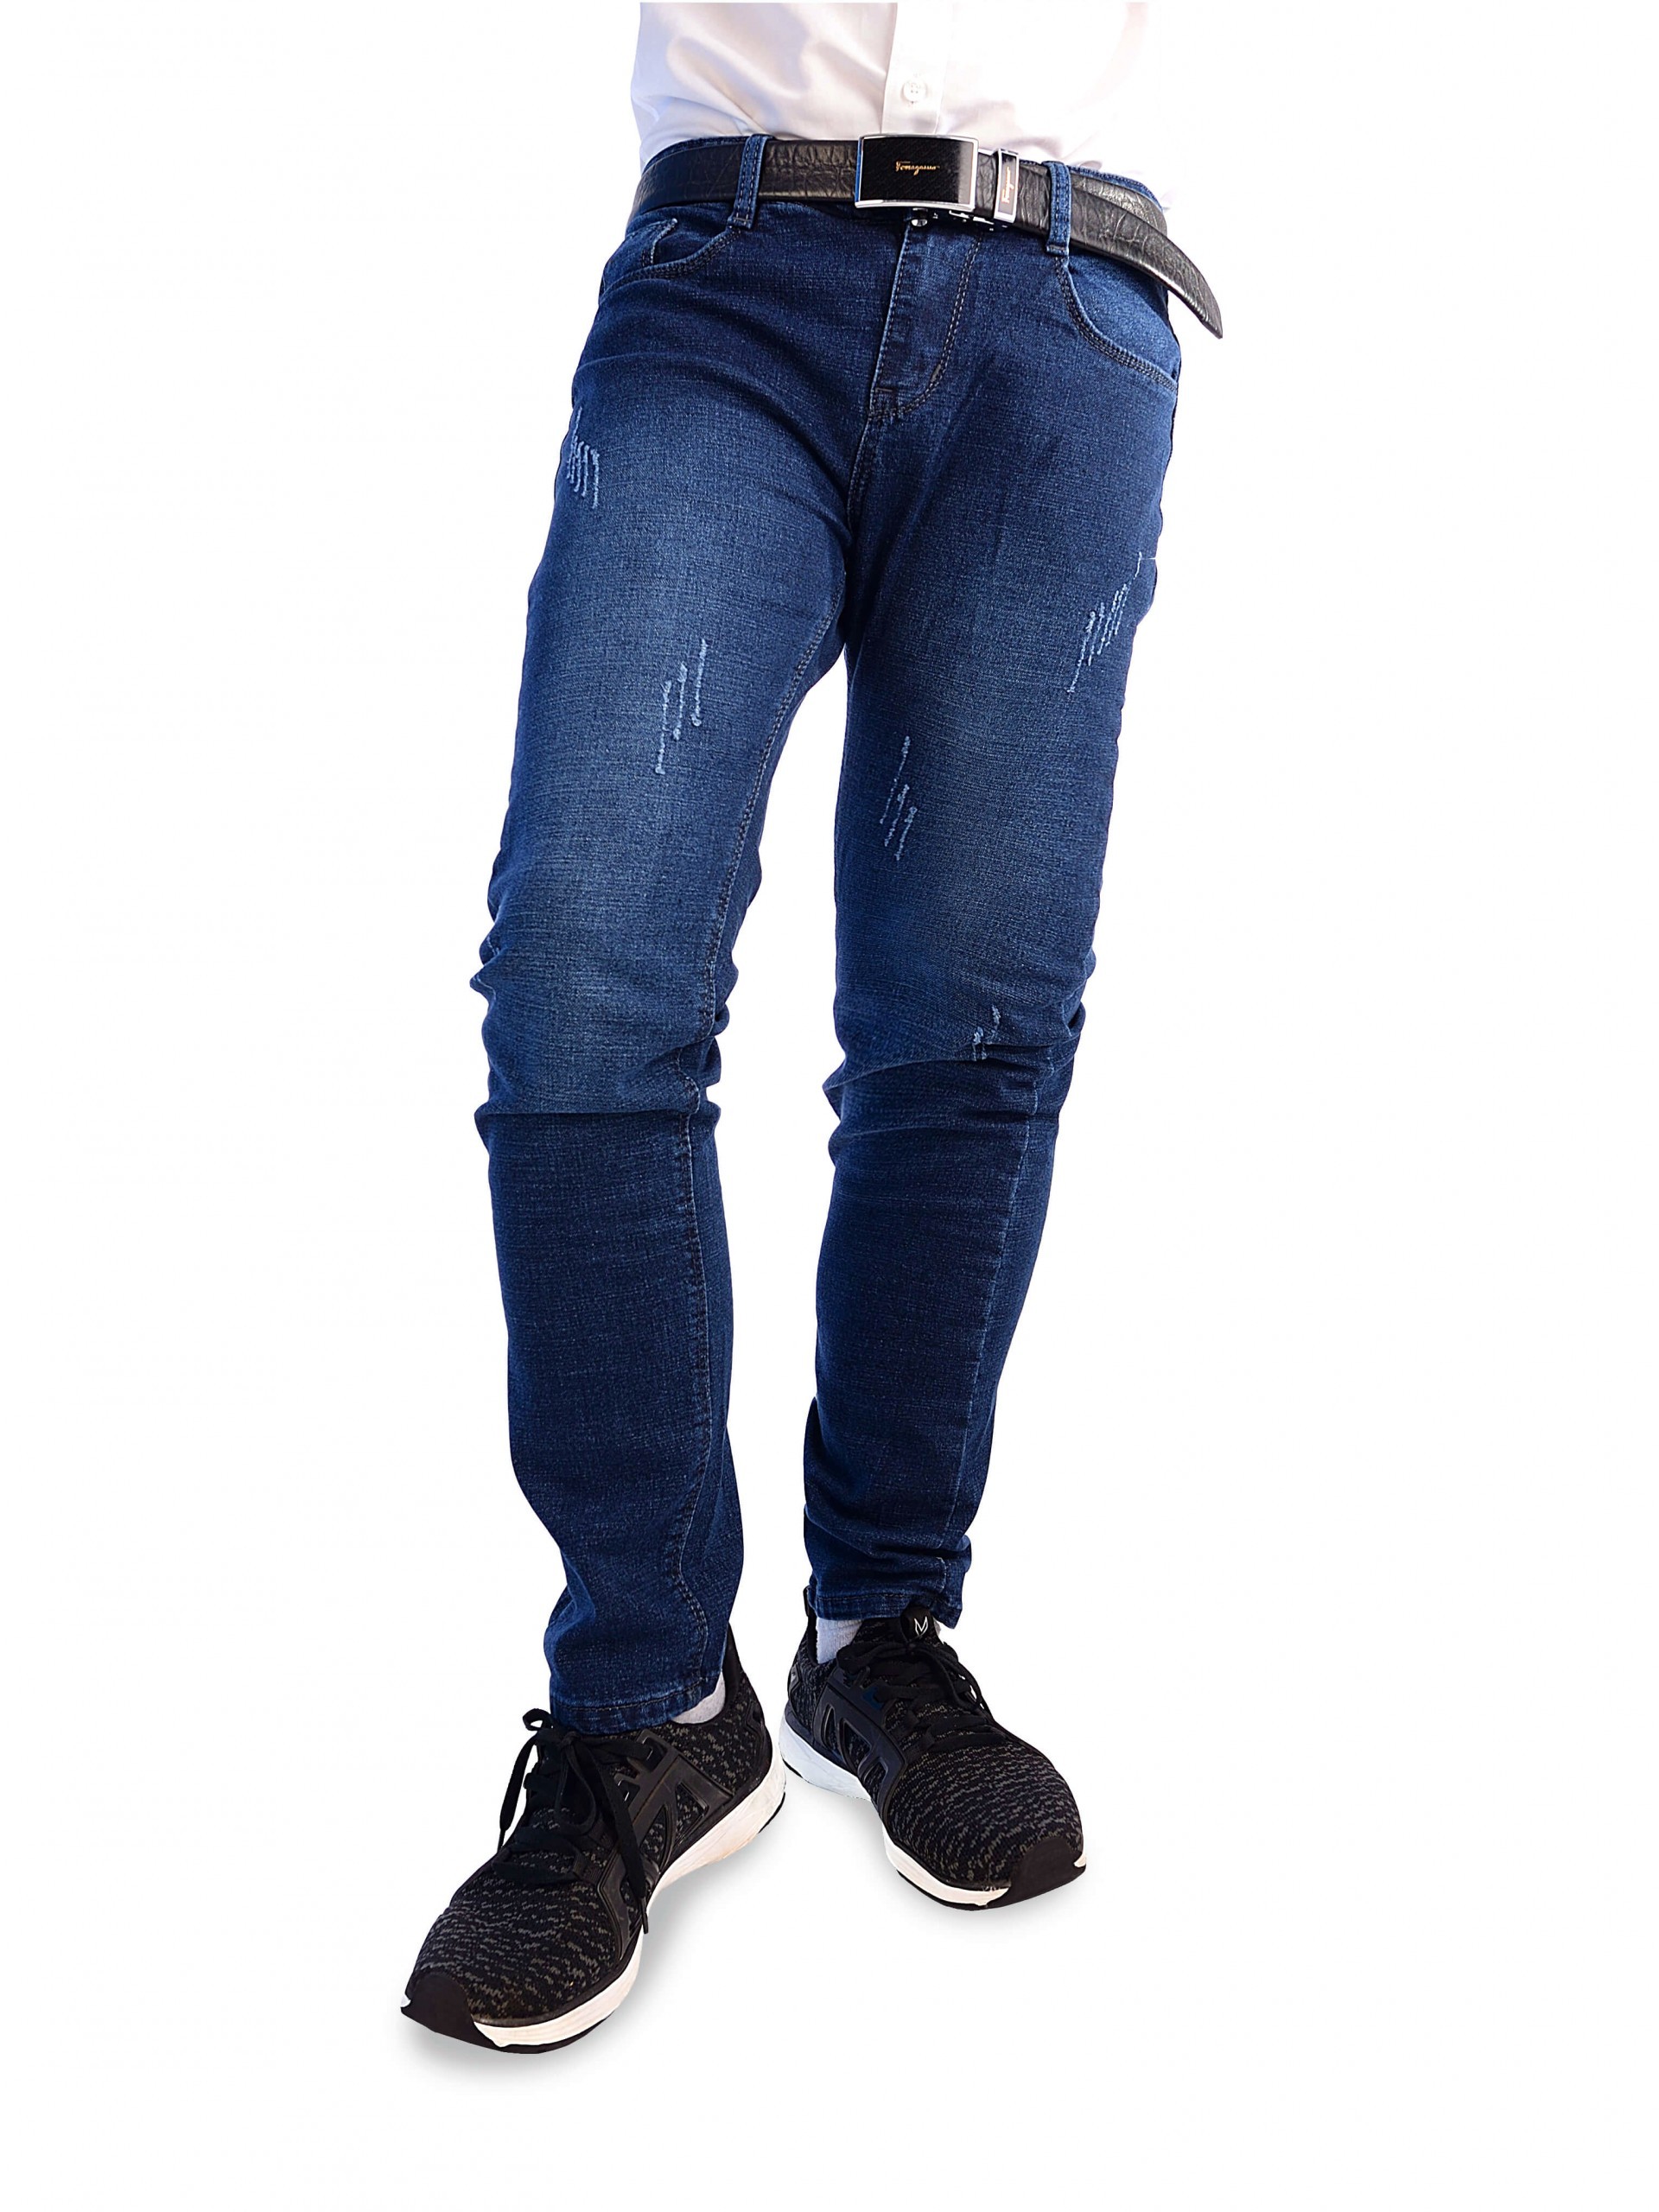 Mẫu jeans ống côn có kén người mặc hay không?